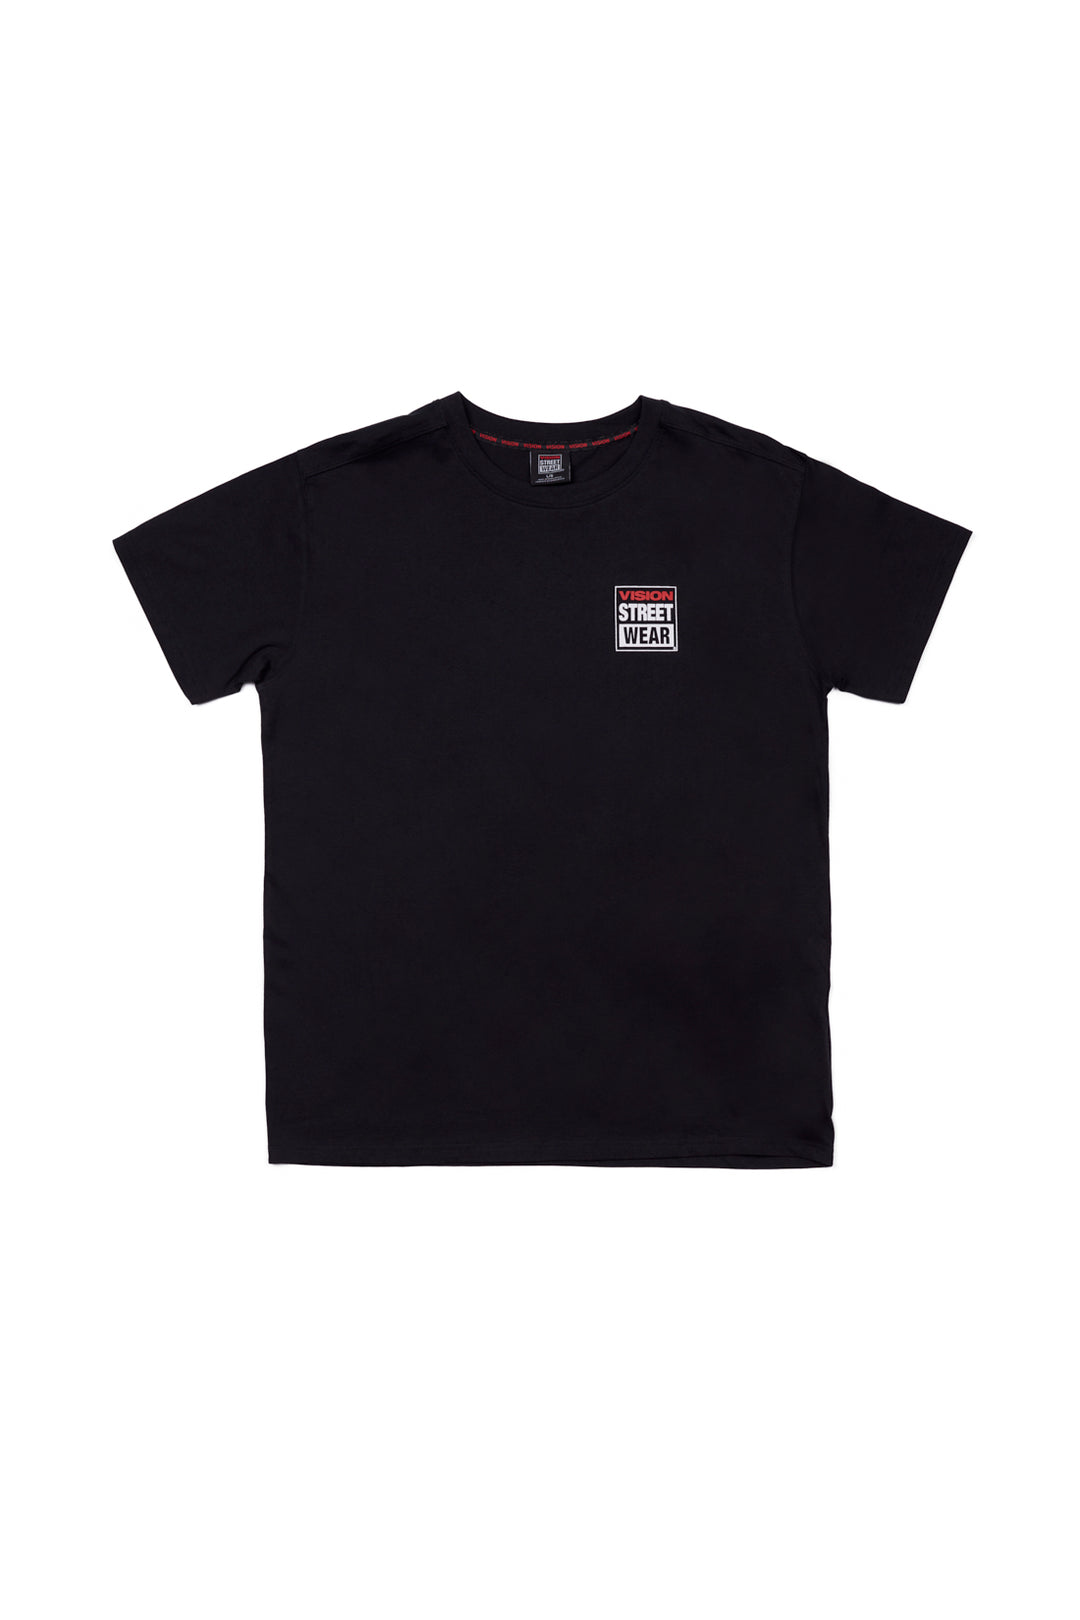 Safety Pin Logo T-Shirt- Black